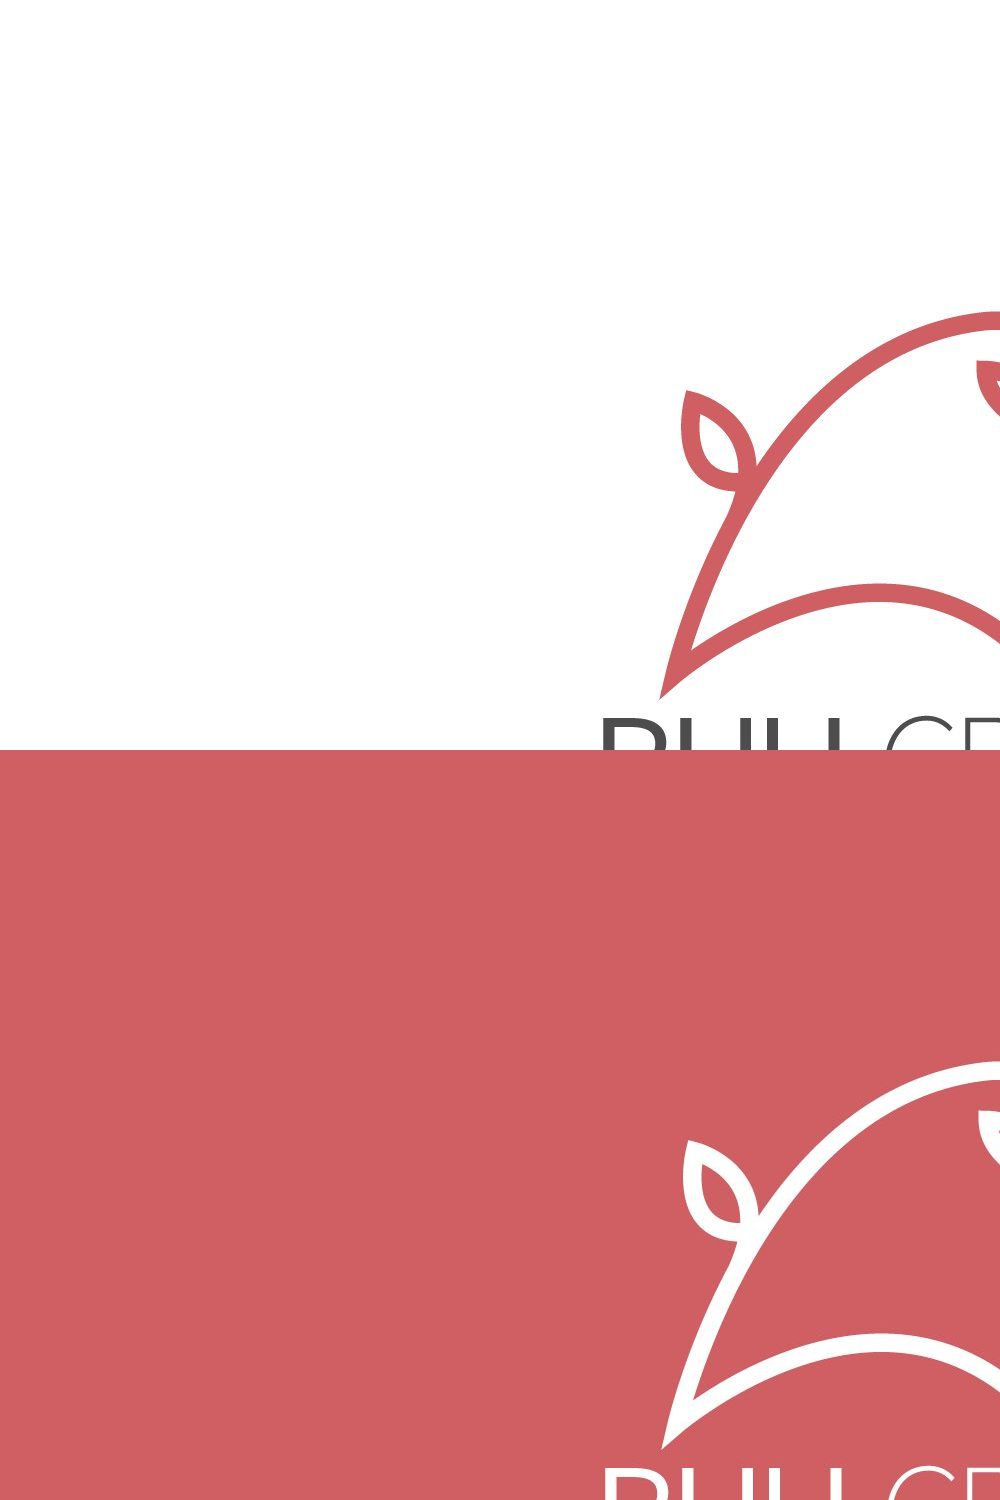 Bull logo pinterest preview image.